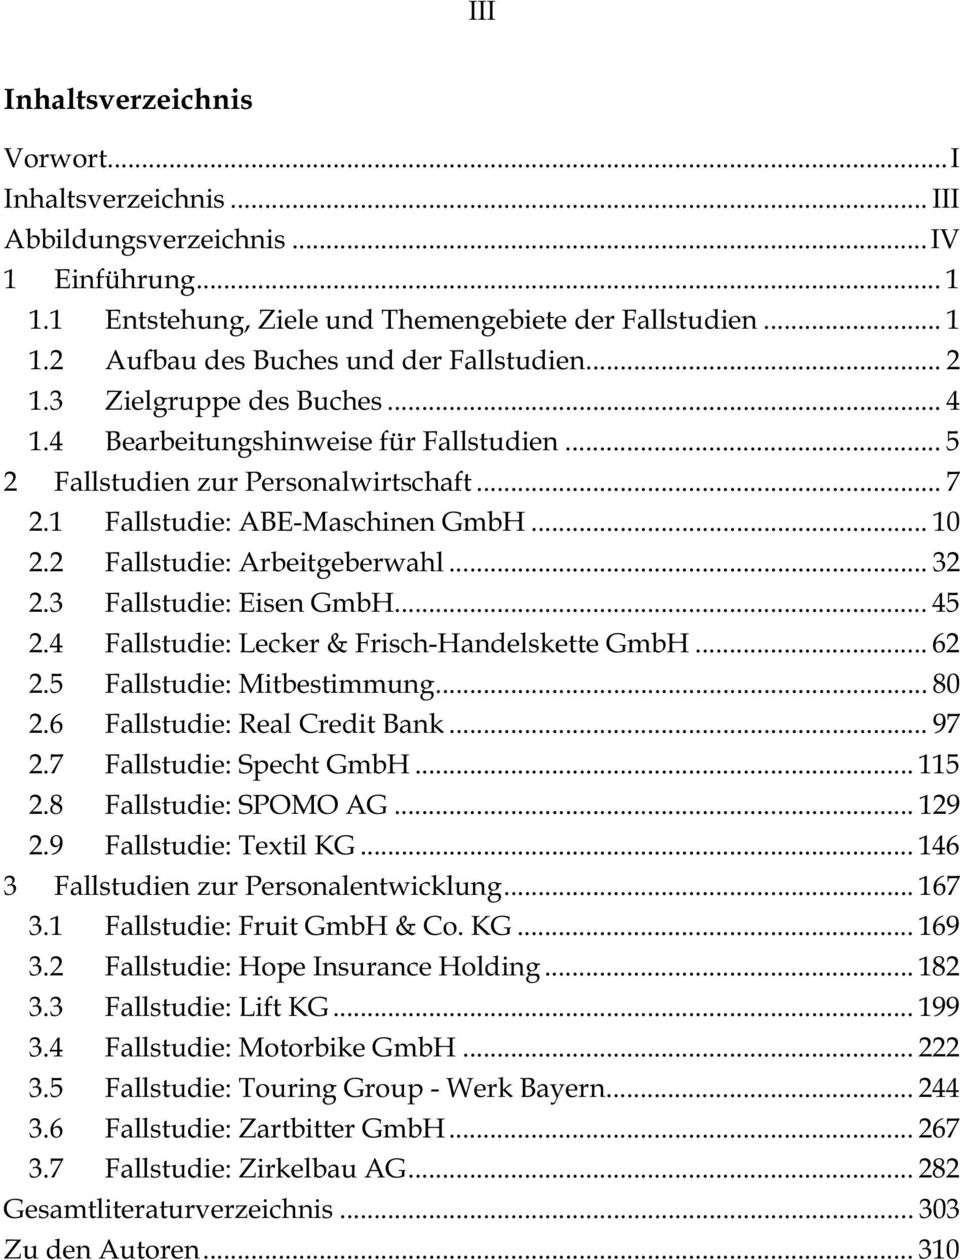 .. 32 2.3 Fallstudie: Eisen GmbH... 45 2.4 Fallstudie: Lecker & Frisch-Handelskette GmbH... 62 2.5 Fallstudie: Mitbestimmung... 80 2.6 Fallstudie: Real Credit Bank... 97 2.7 Fallstudie: Specht GmbH.